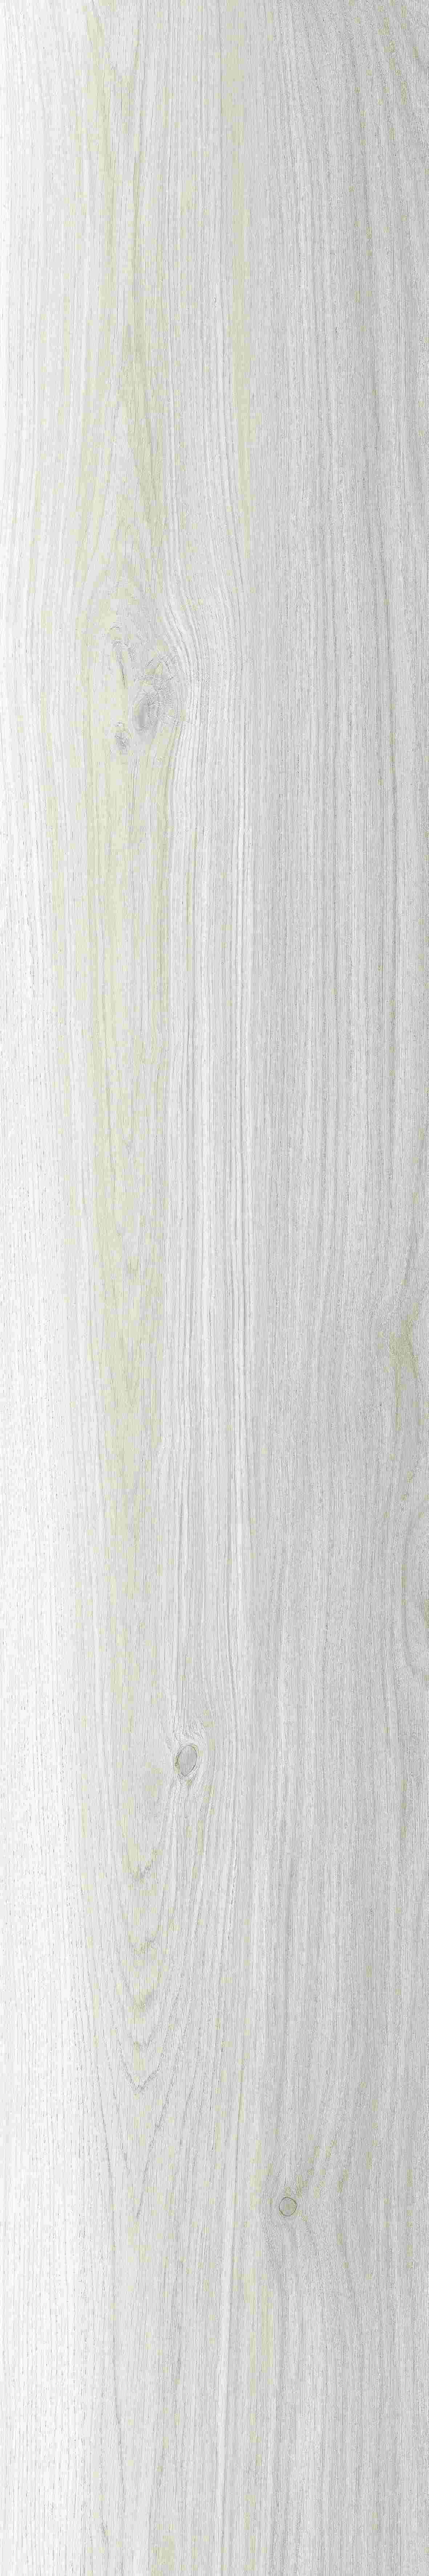 Panaria Nuance Perle Antibacterial - Naturale PGIN130 30x180cm rectified 10,5mm